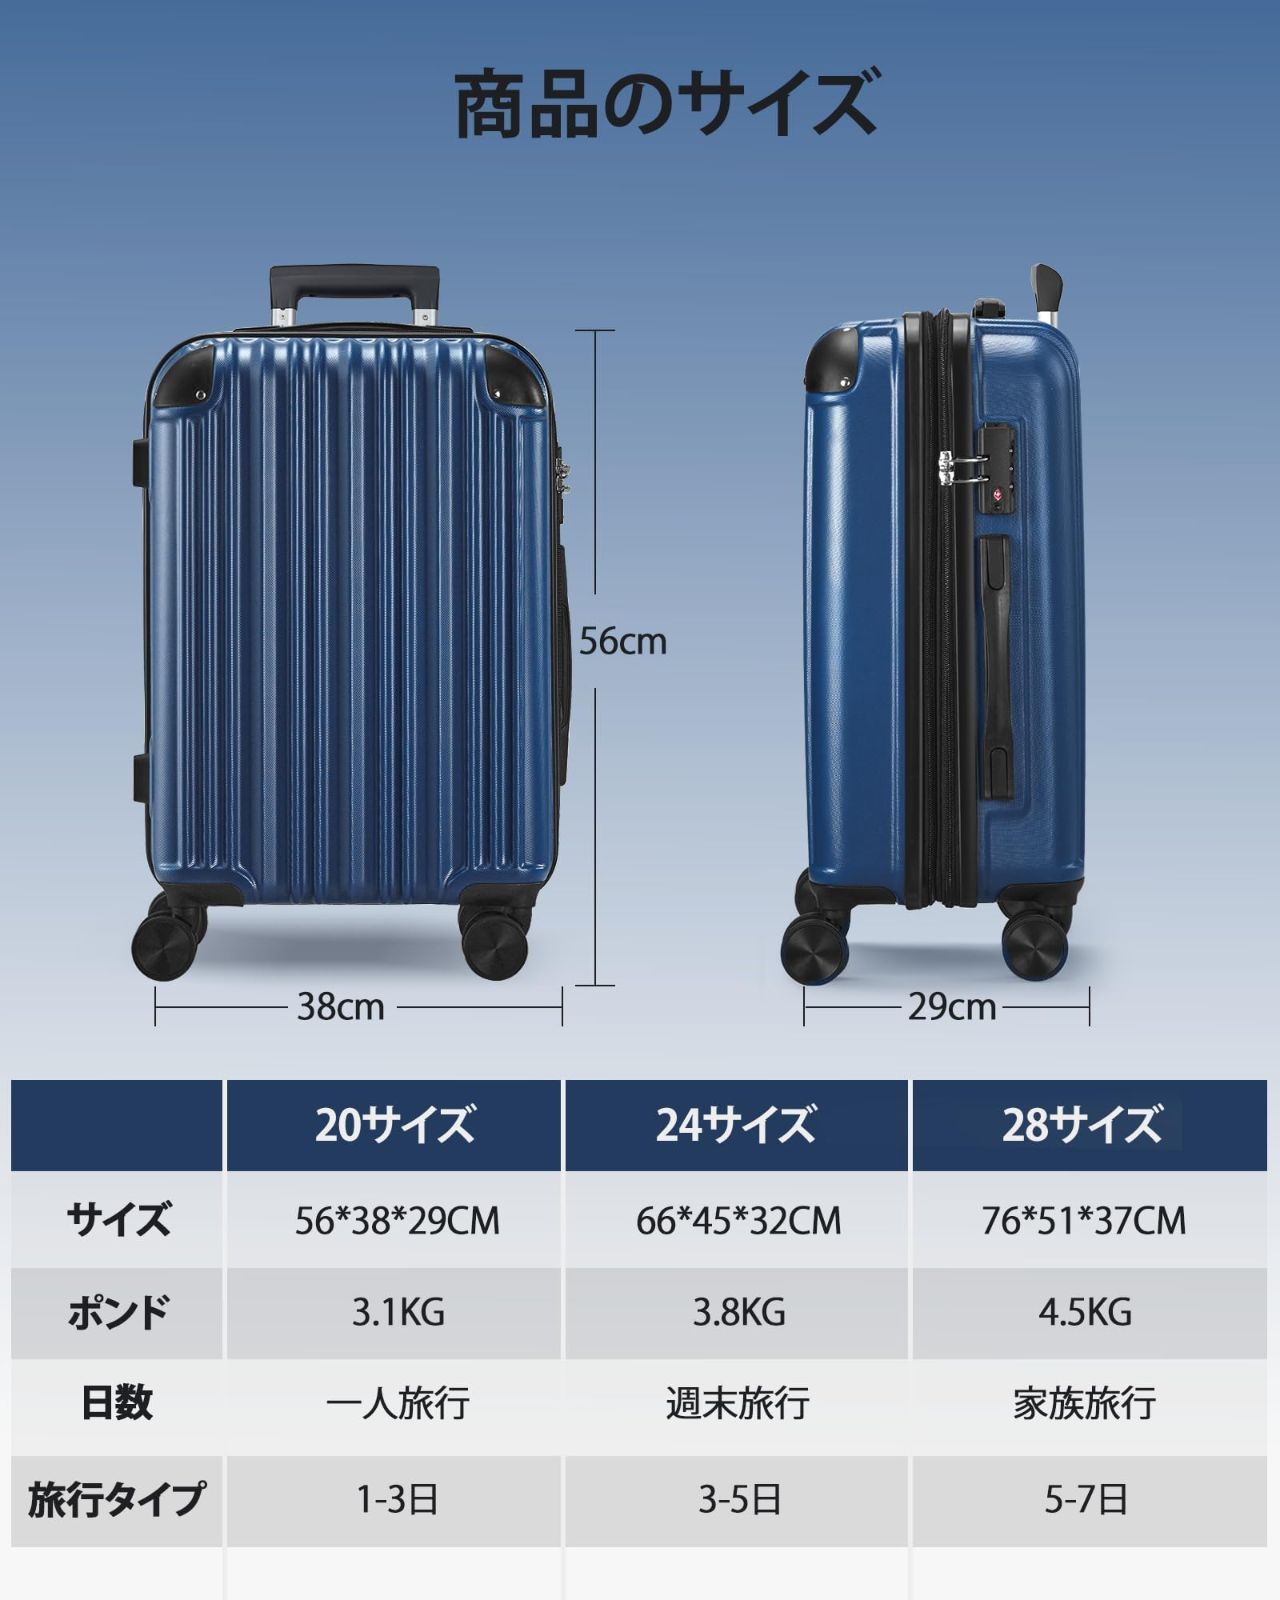 SunnyTour スーツケース キャリーケース 軽量 TSAロック 360度回転